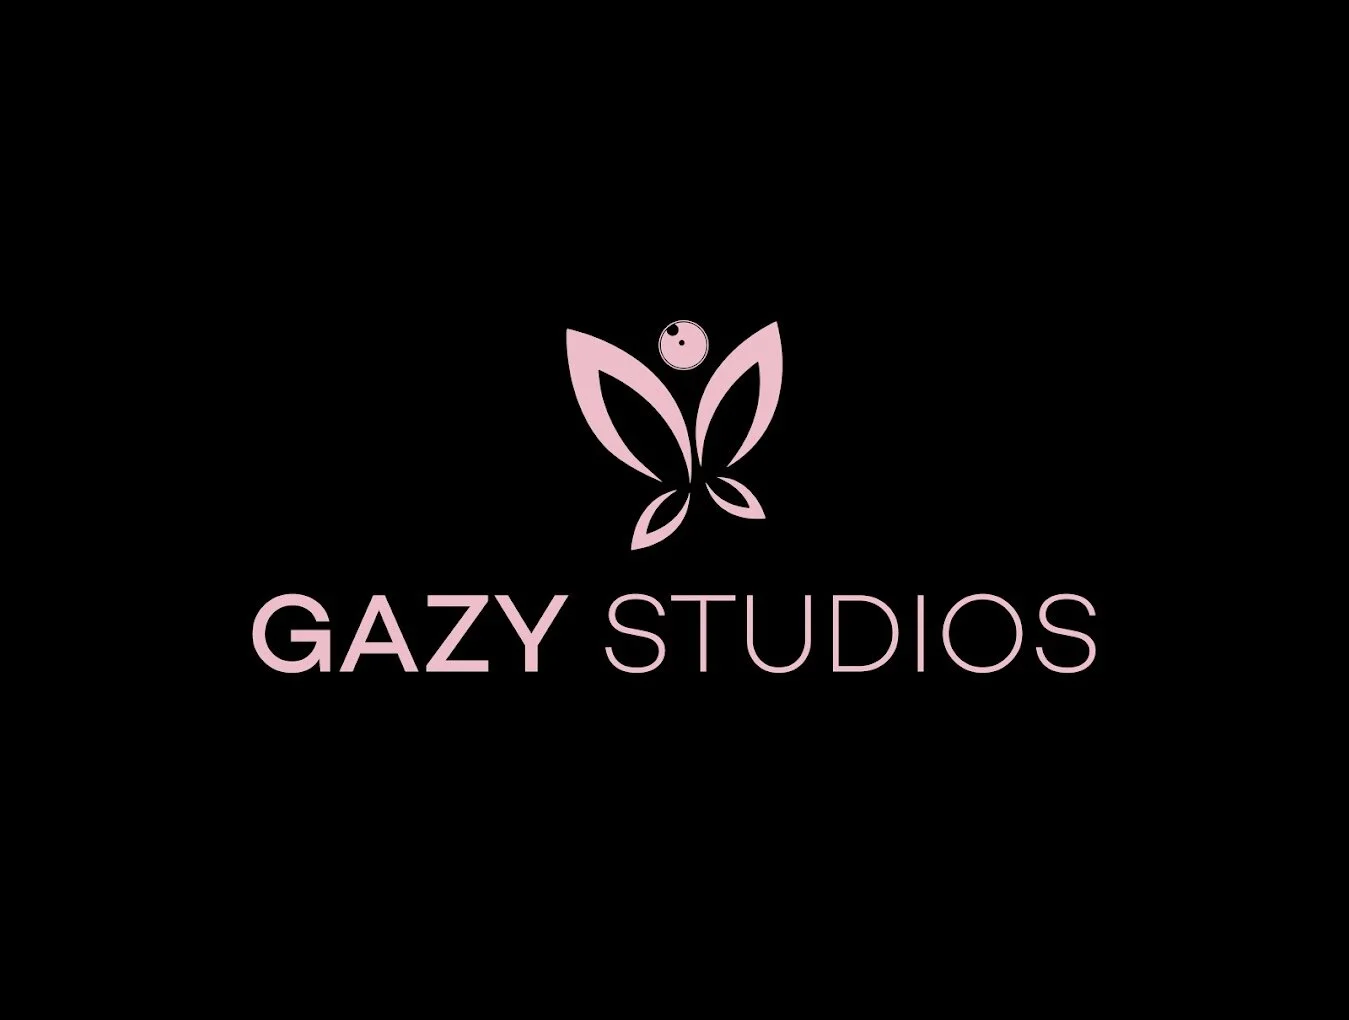 Estudios Fotográficos-gazy-sas-31750